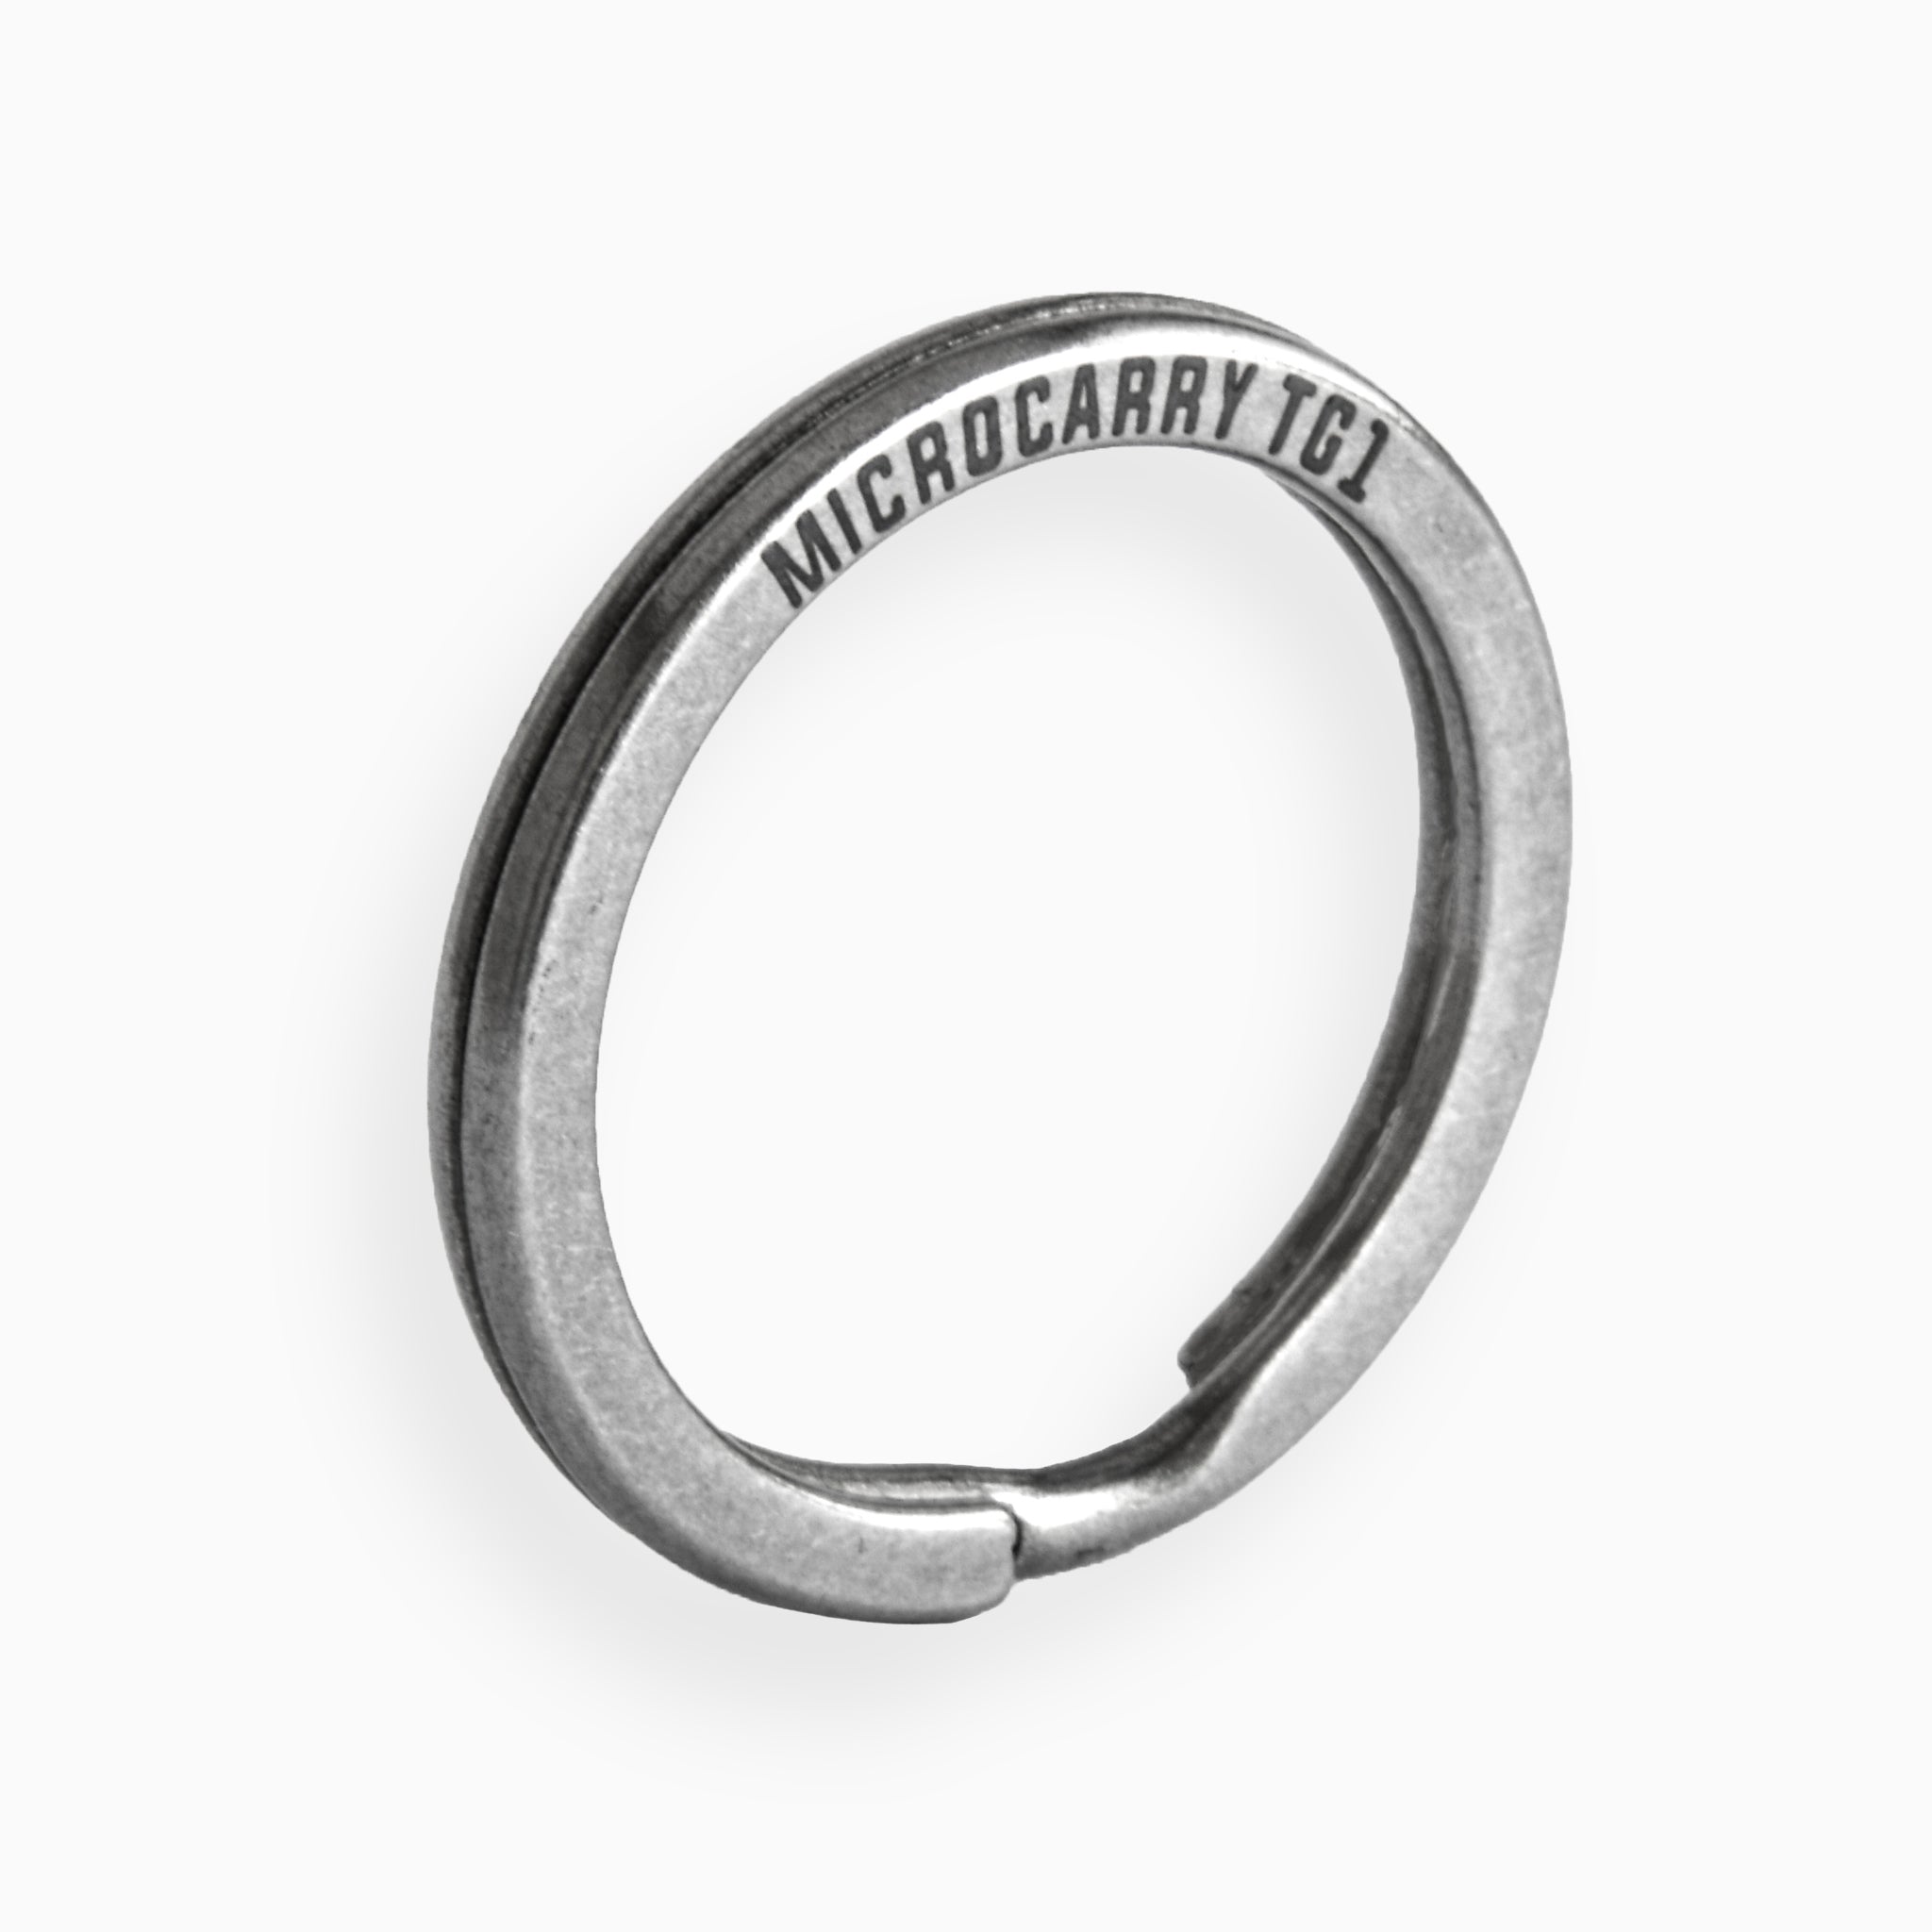 KA32 Titanium Key Ring